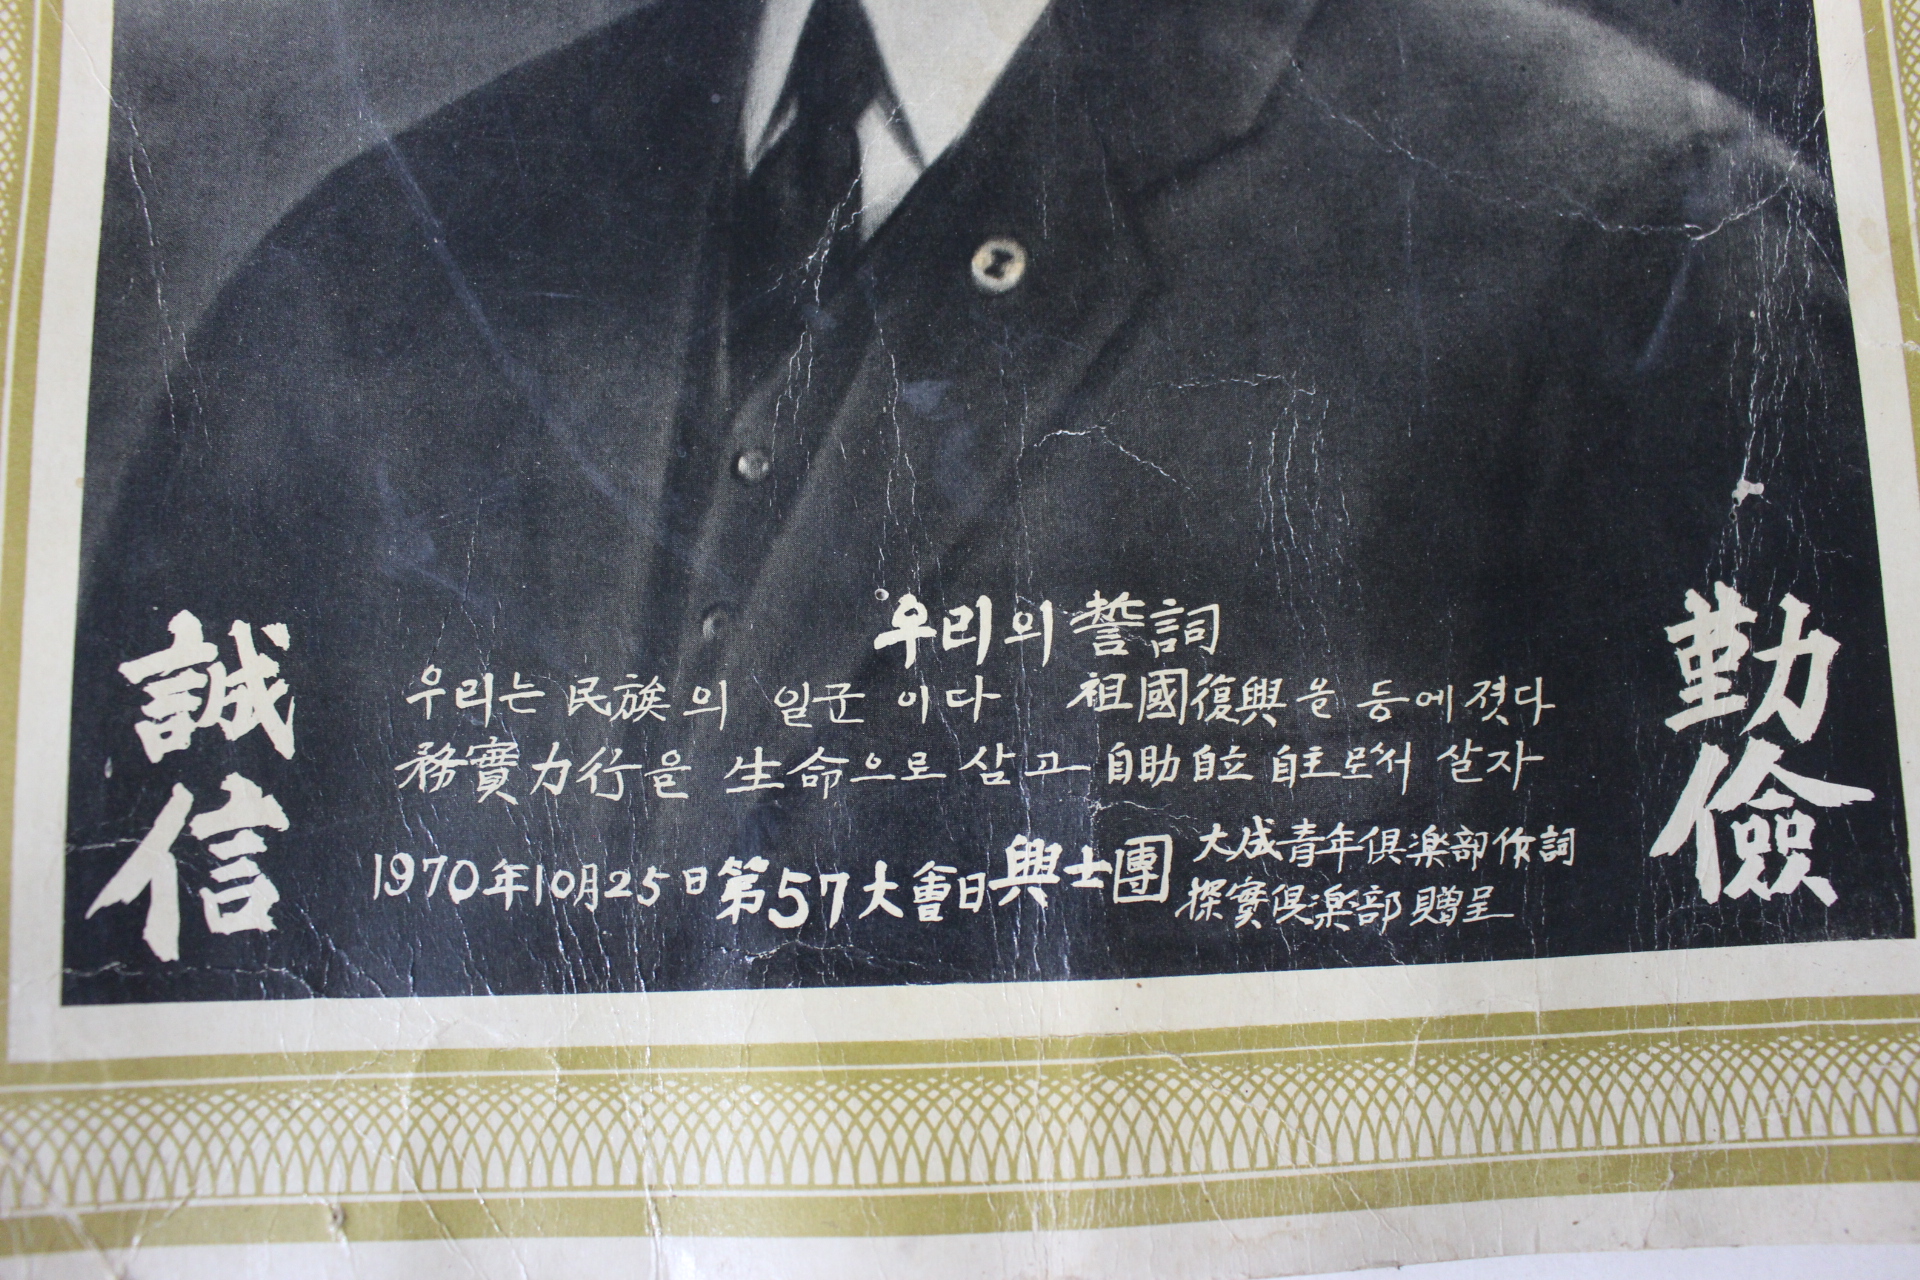 1970년10월25일 흥사단 도산 안창호(安昌浩) 선생 사진